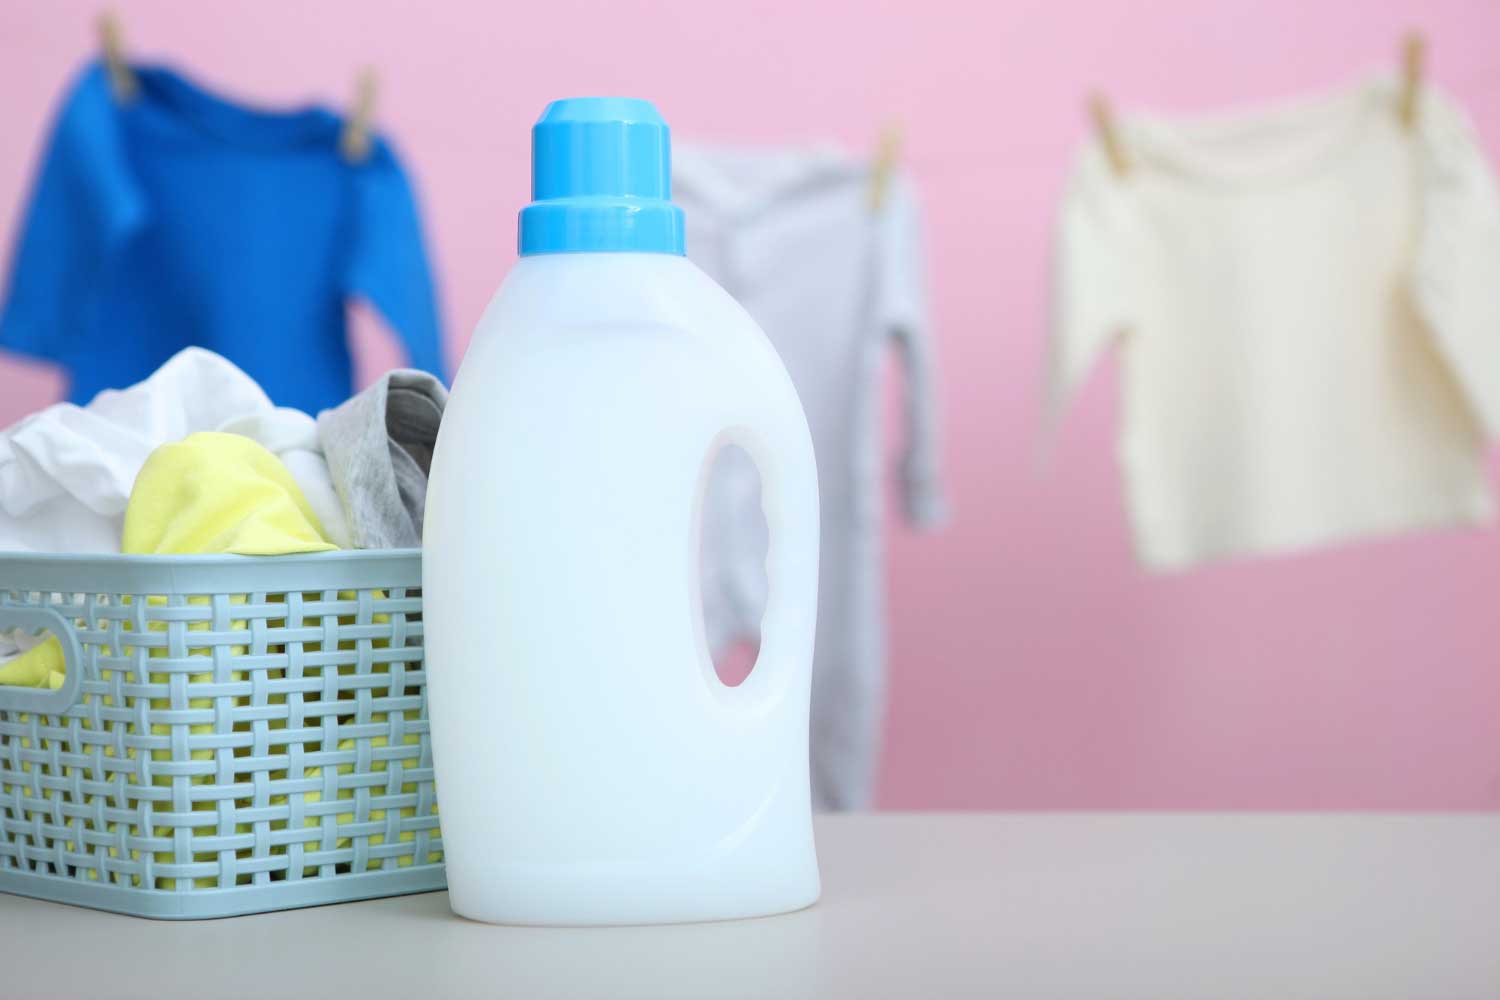 Liquid laundry detergent packet exposure burden among young children ...